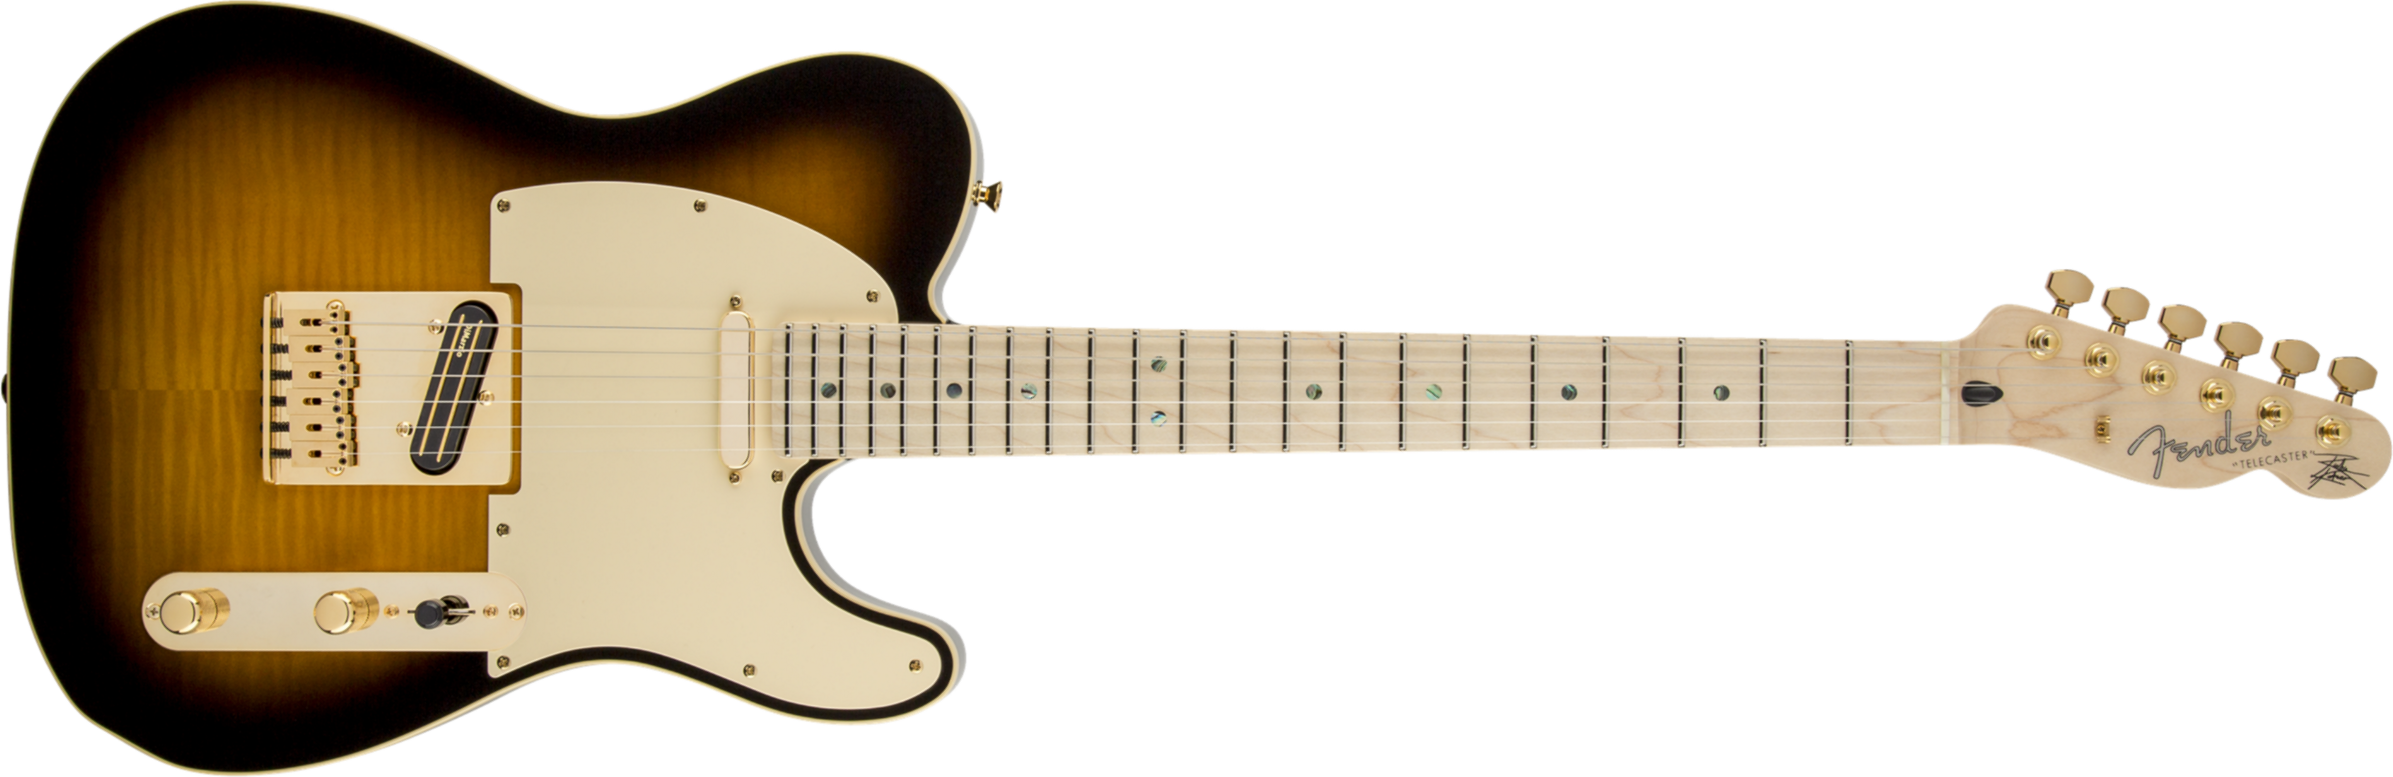 Fender Telecaster Richie Kotzen (jap, Mn) - Brown Sunburst - Tel shape electric guitar - Main picture